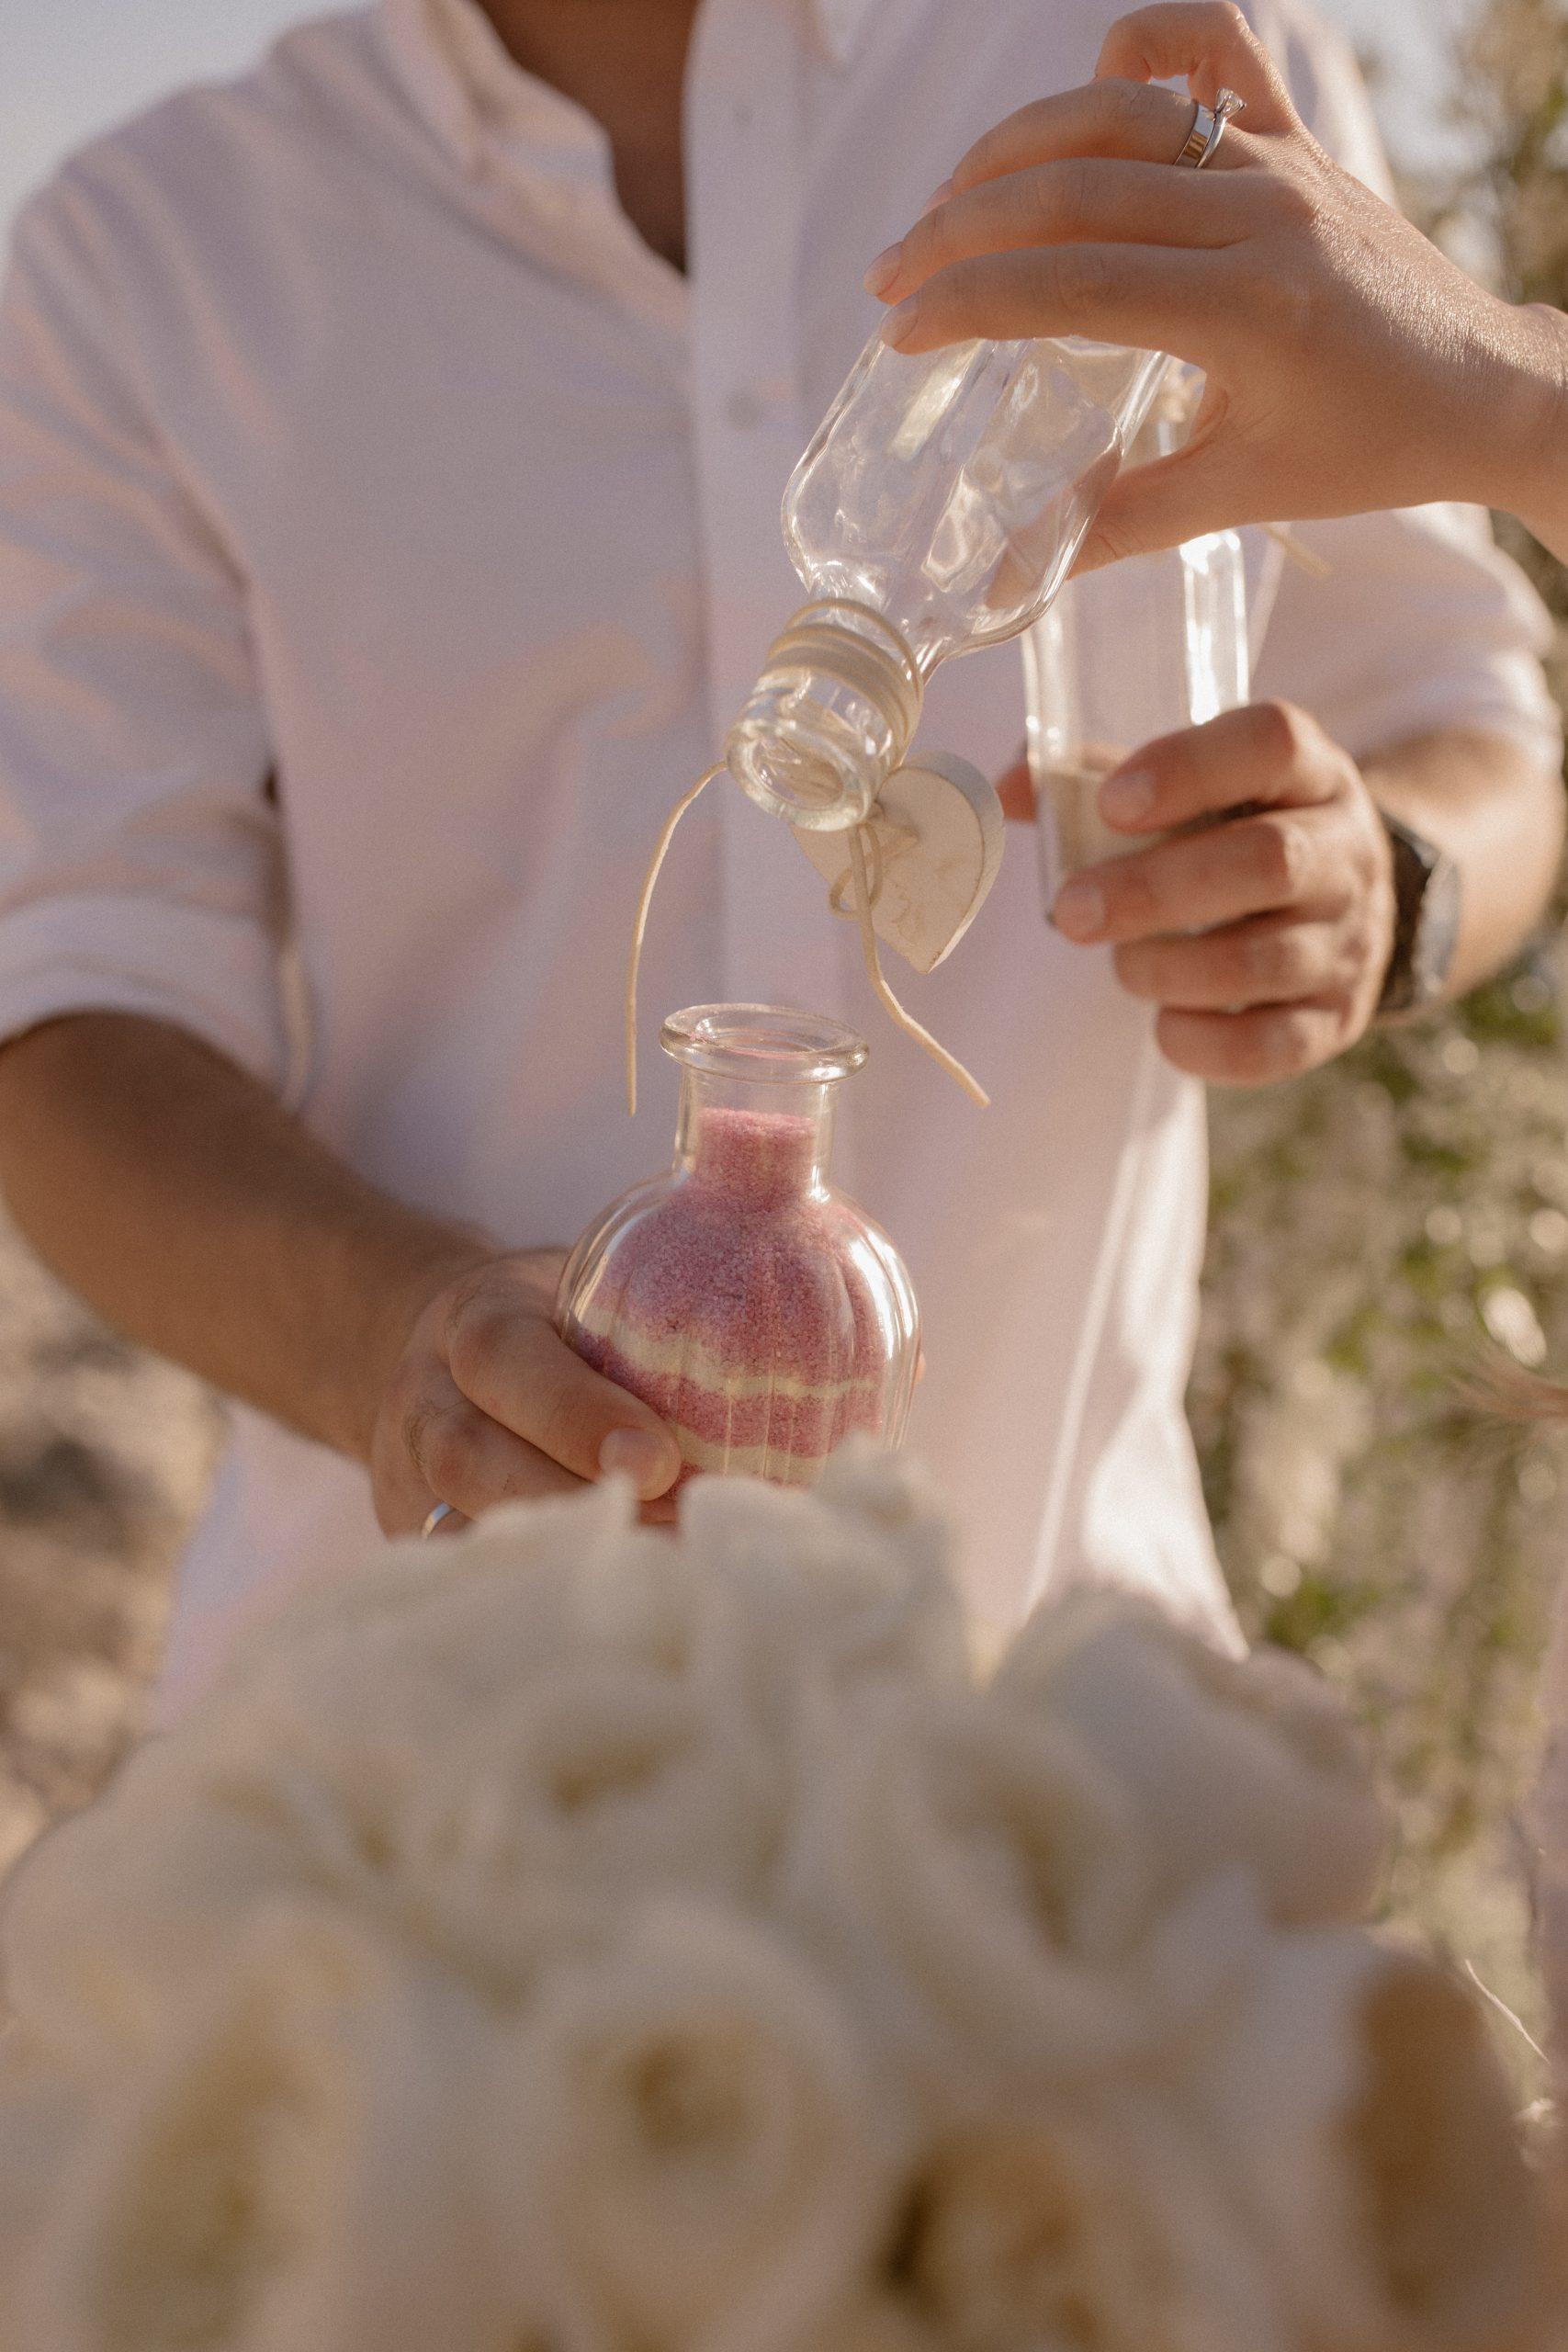 Свадьба на Кипре. Белые Скалы, Пафос. Wedding in Cyprus. T-Style Wedding. Paphos, white rocks. Организация свадьбы 2022. Символическая церемония.